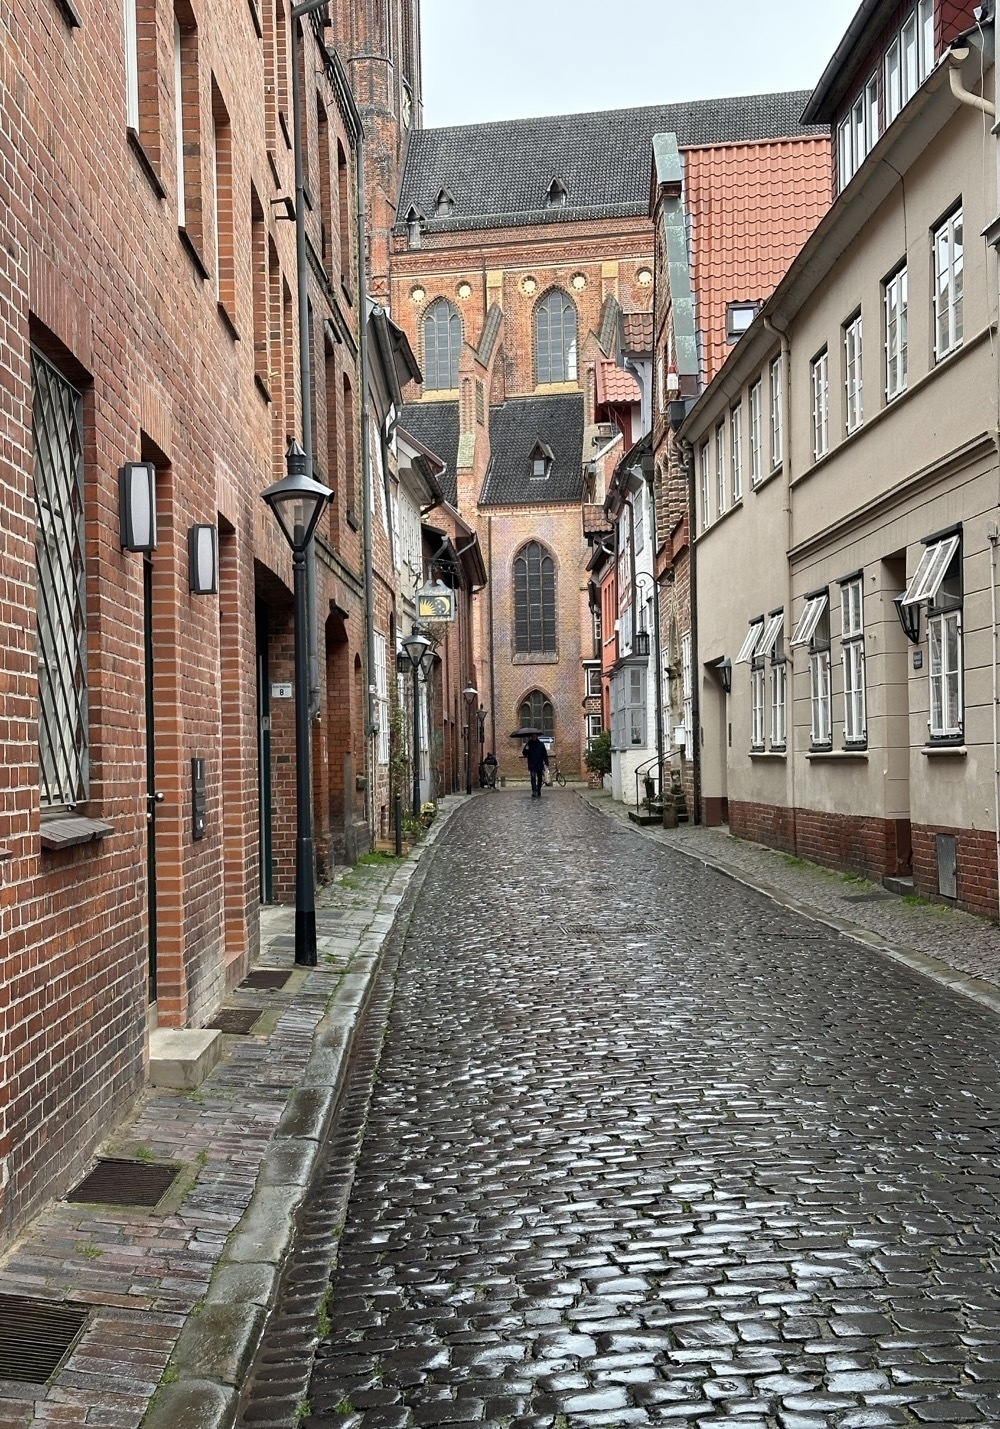 St Nicolai, seen through an alley